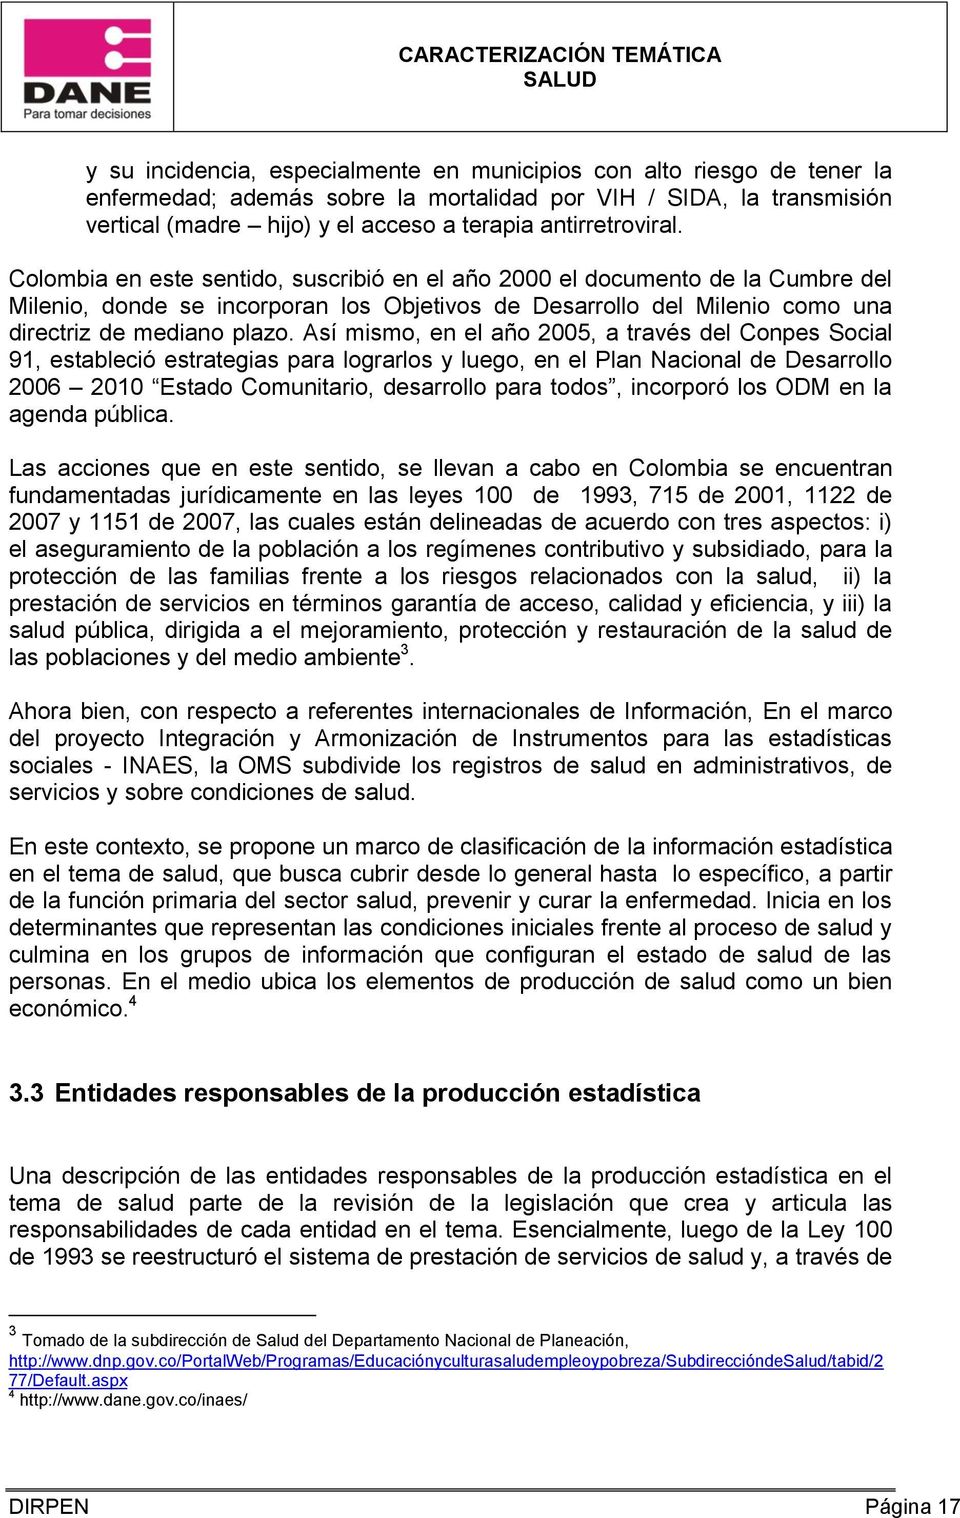 Colombia en este sentido, suscribió en el año 2000 el documento de la Cumbre del Milenio, donde se incorporan los Objetivos de Desarrollo del Milenio como una directriz de mediano plazo.